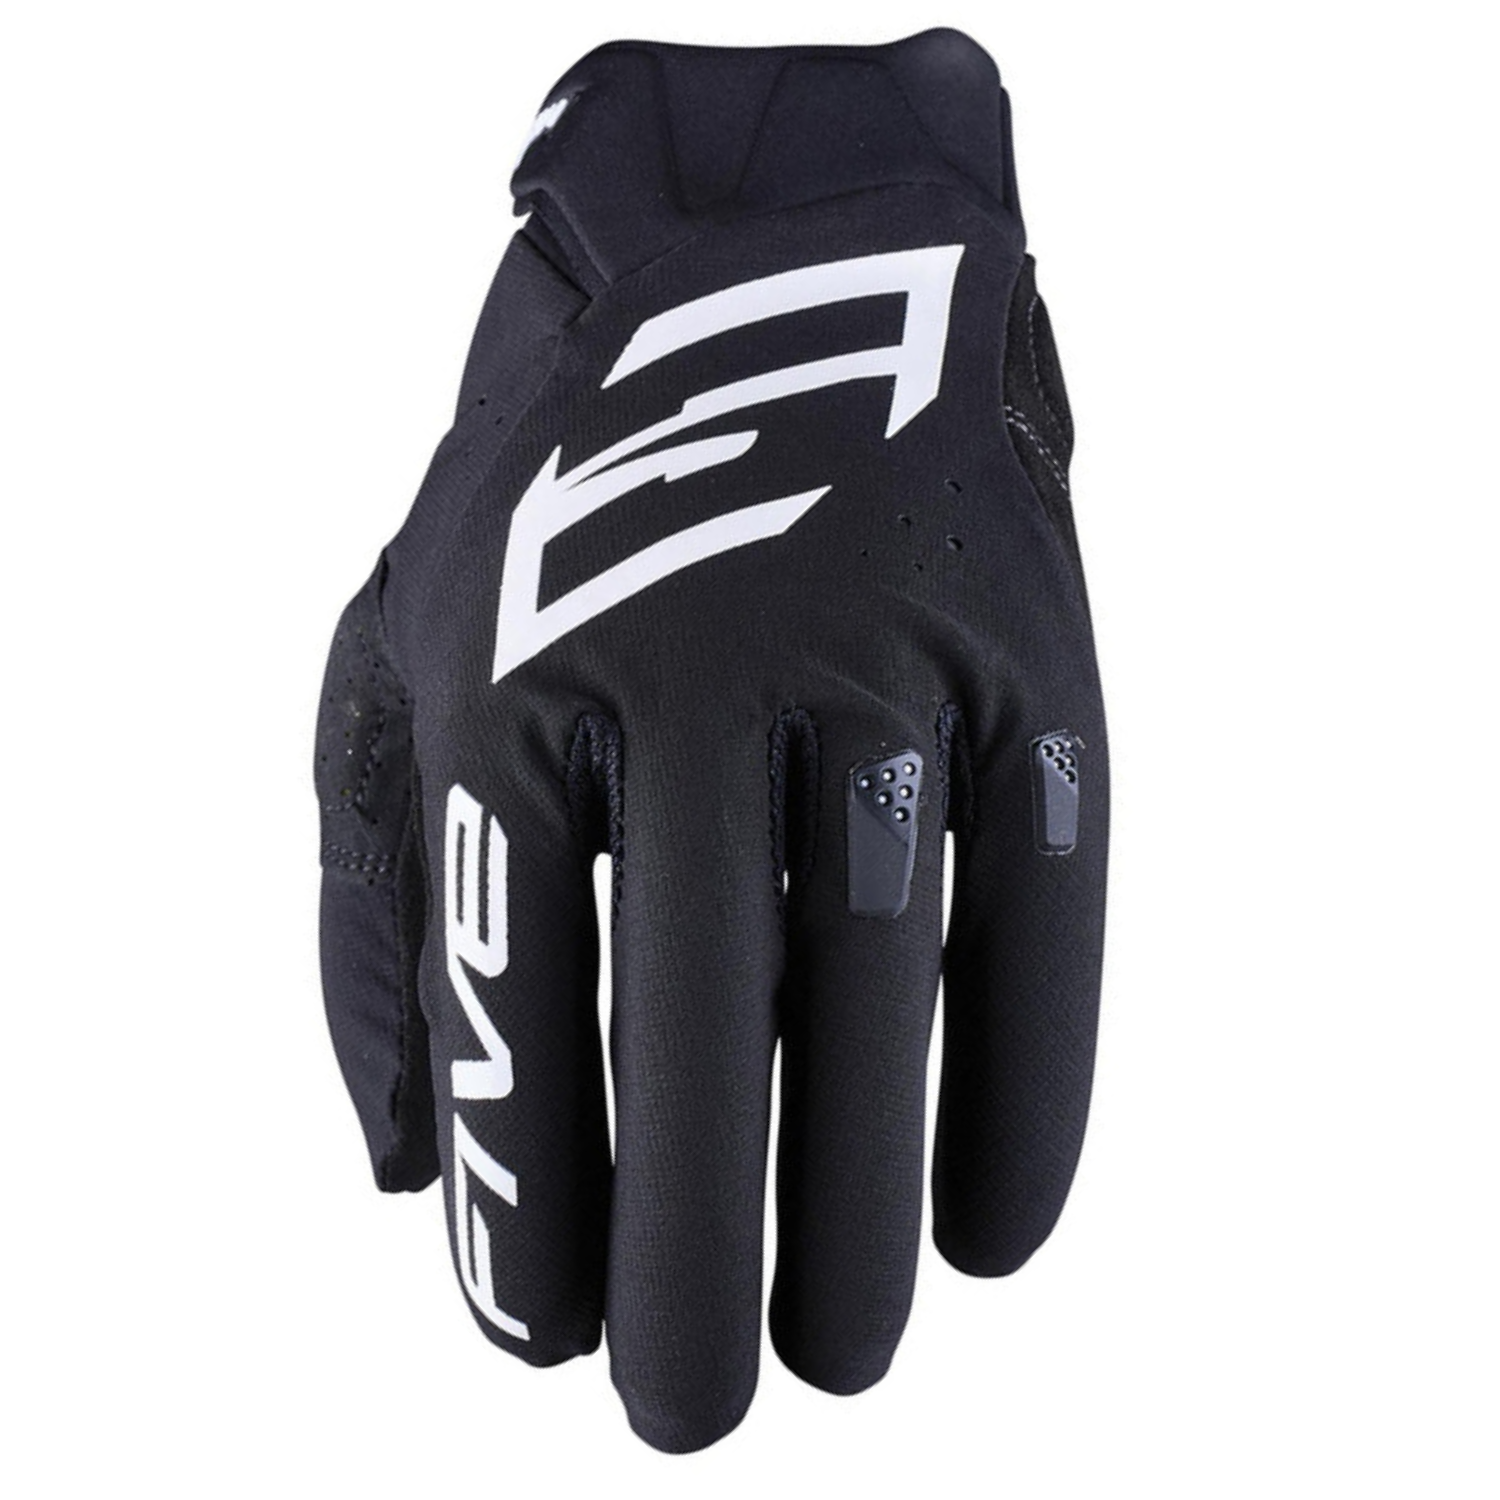 Five MXF1 Evo Gloves Black White Size L